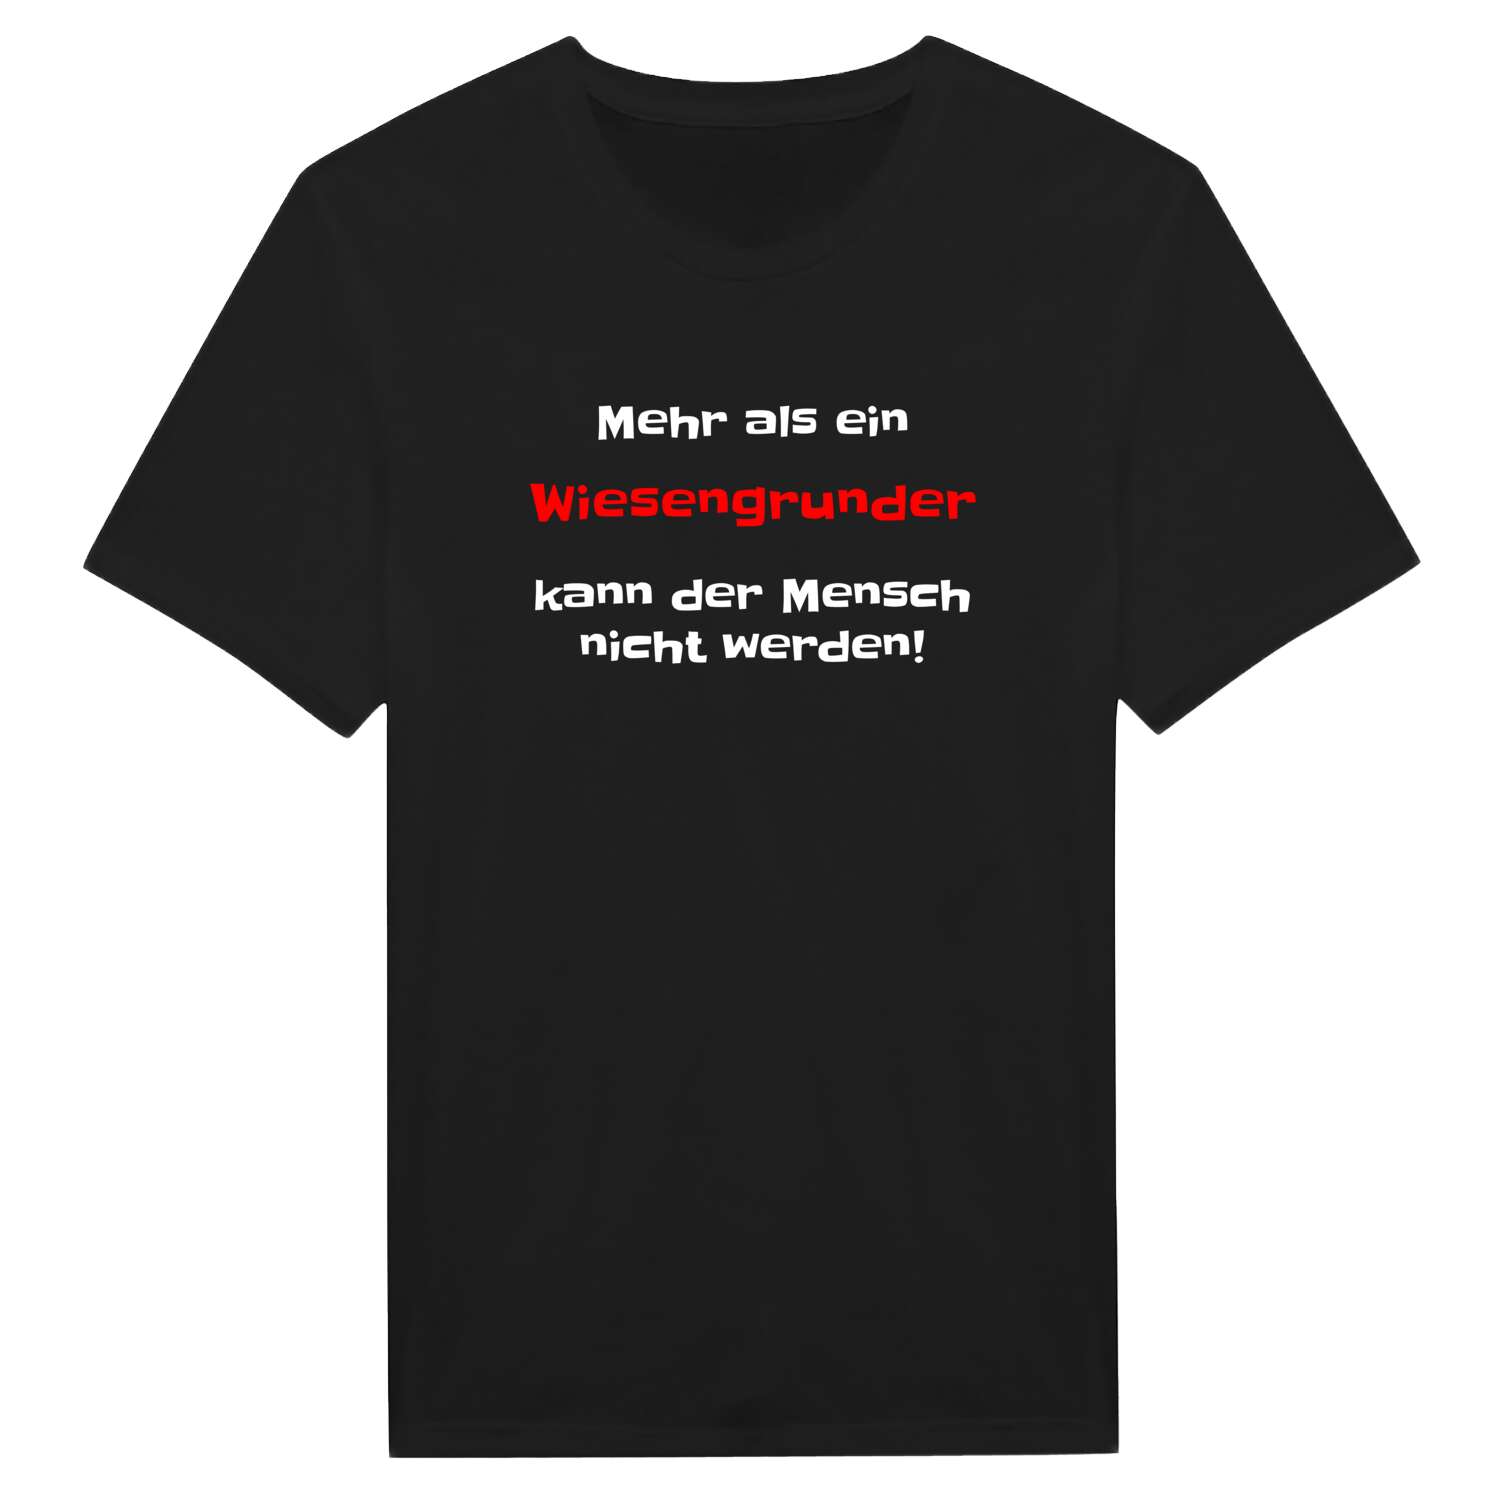 Wiesengrund T-Shirt »Mehr als ein«